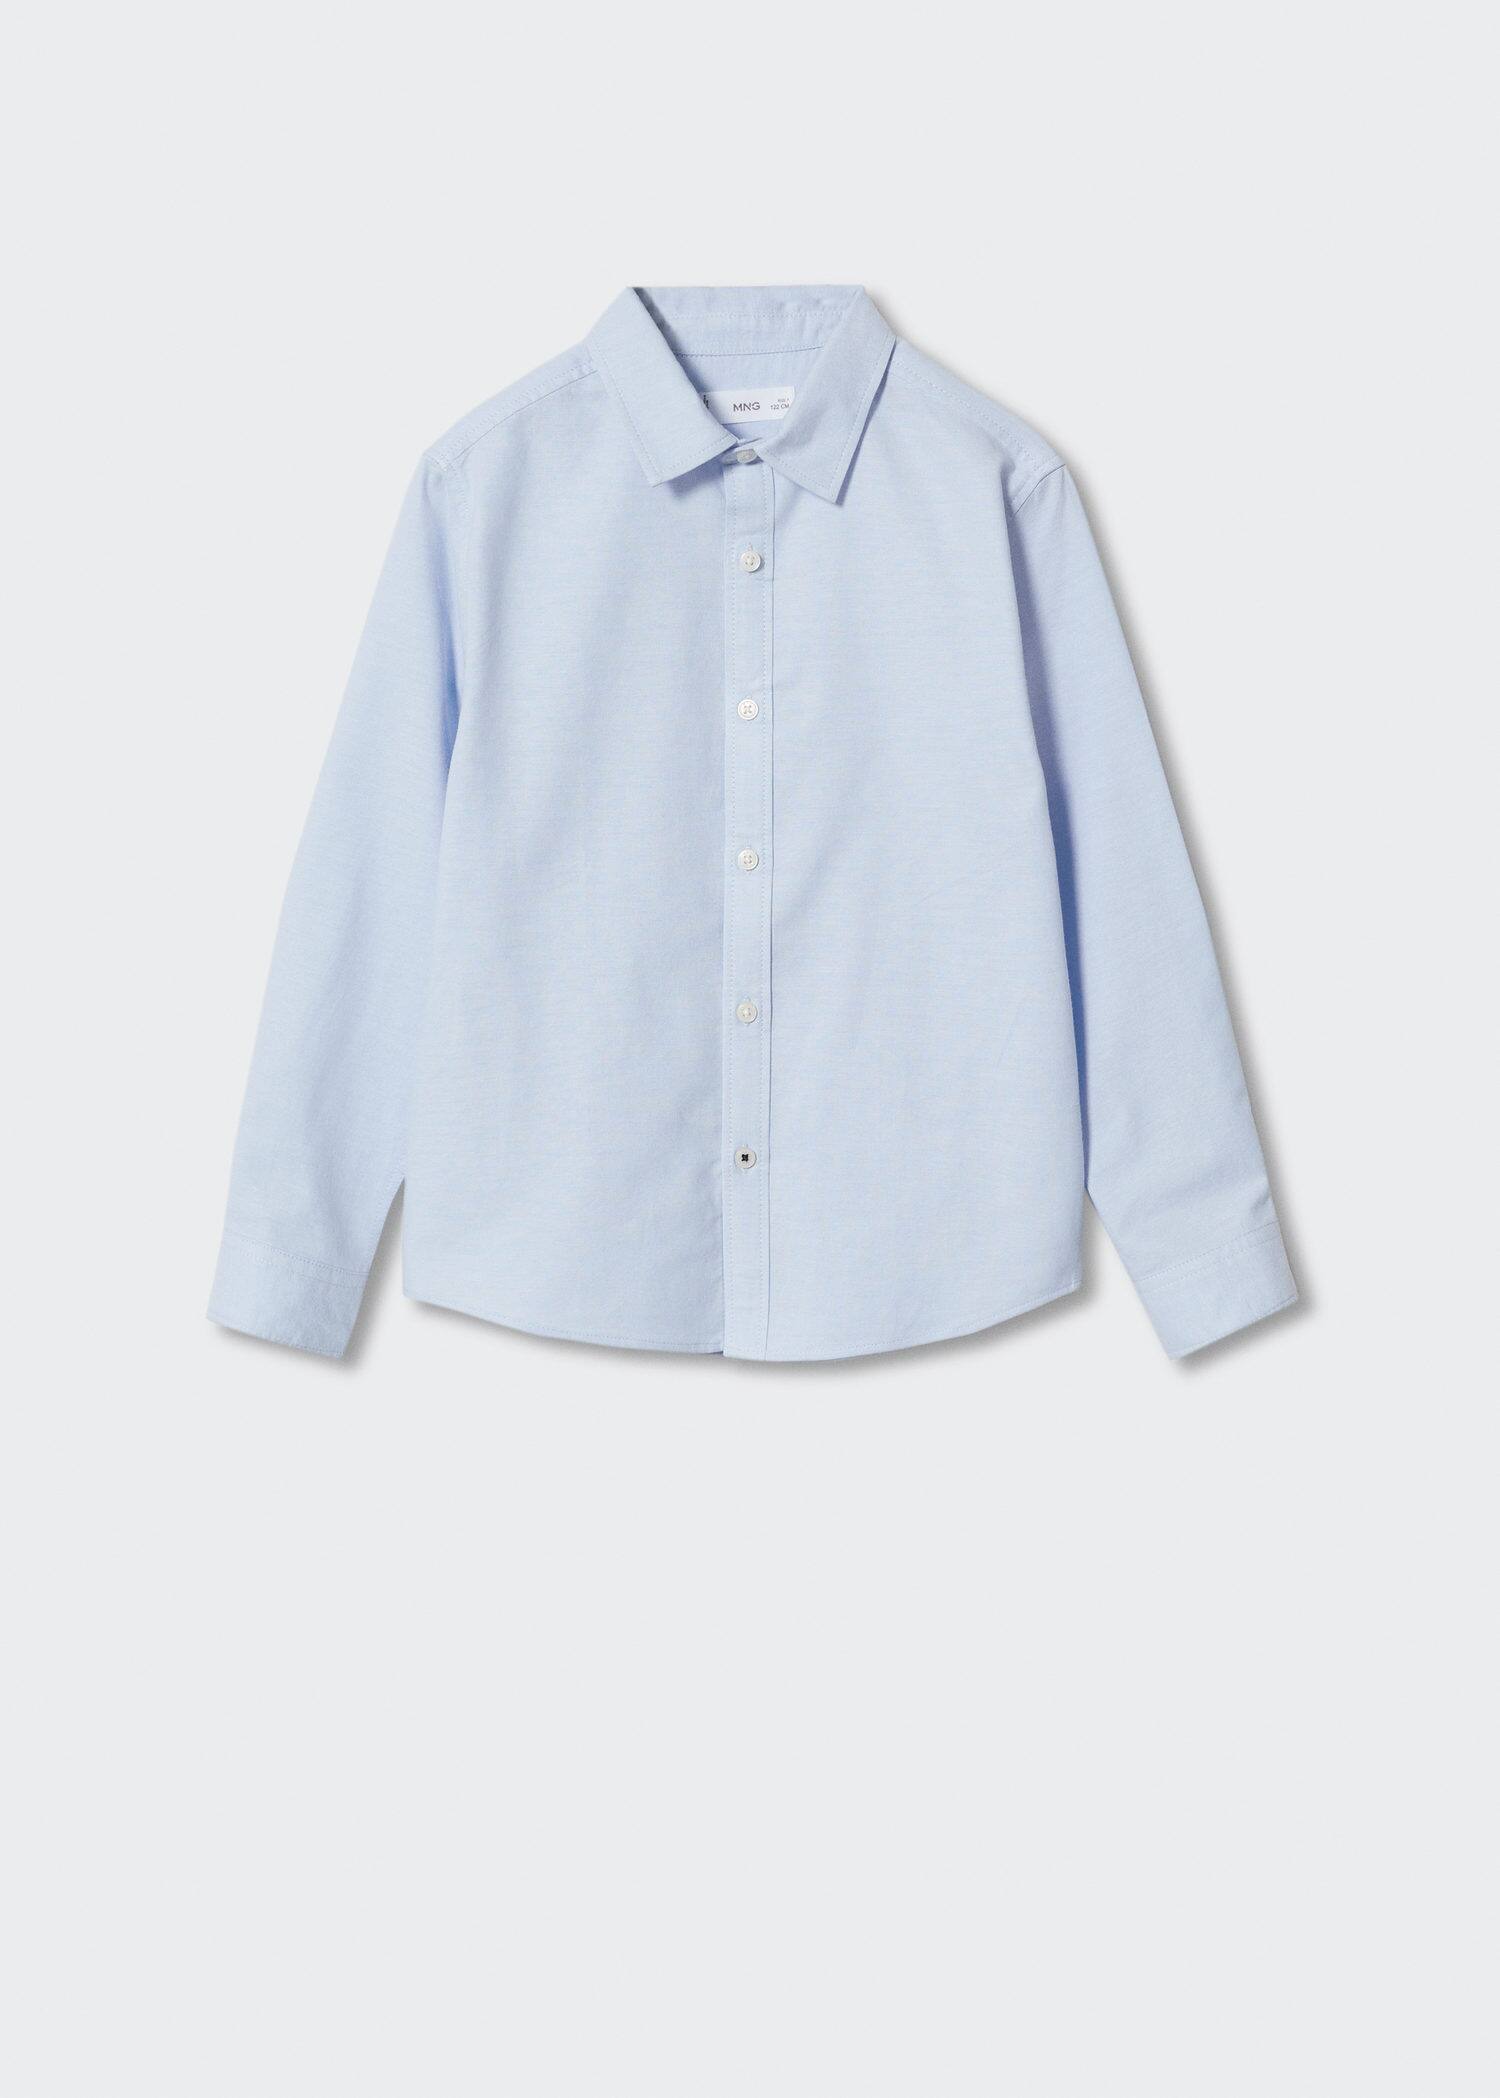 Oxford cotton shirt - Zboží bez modelu